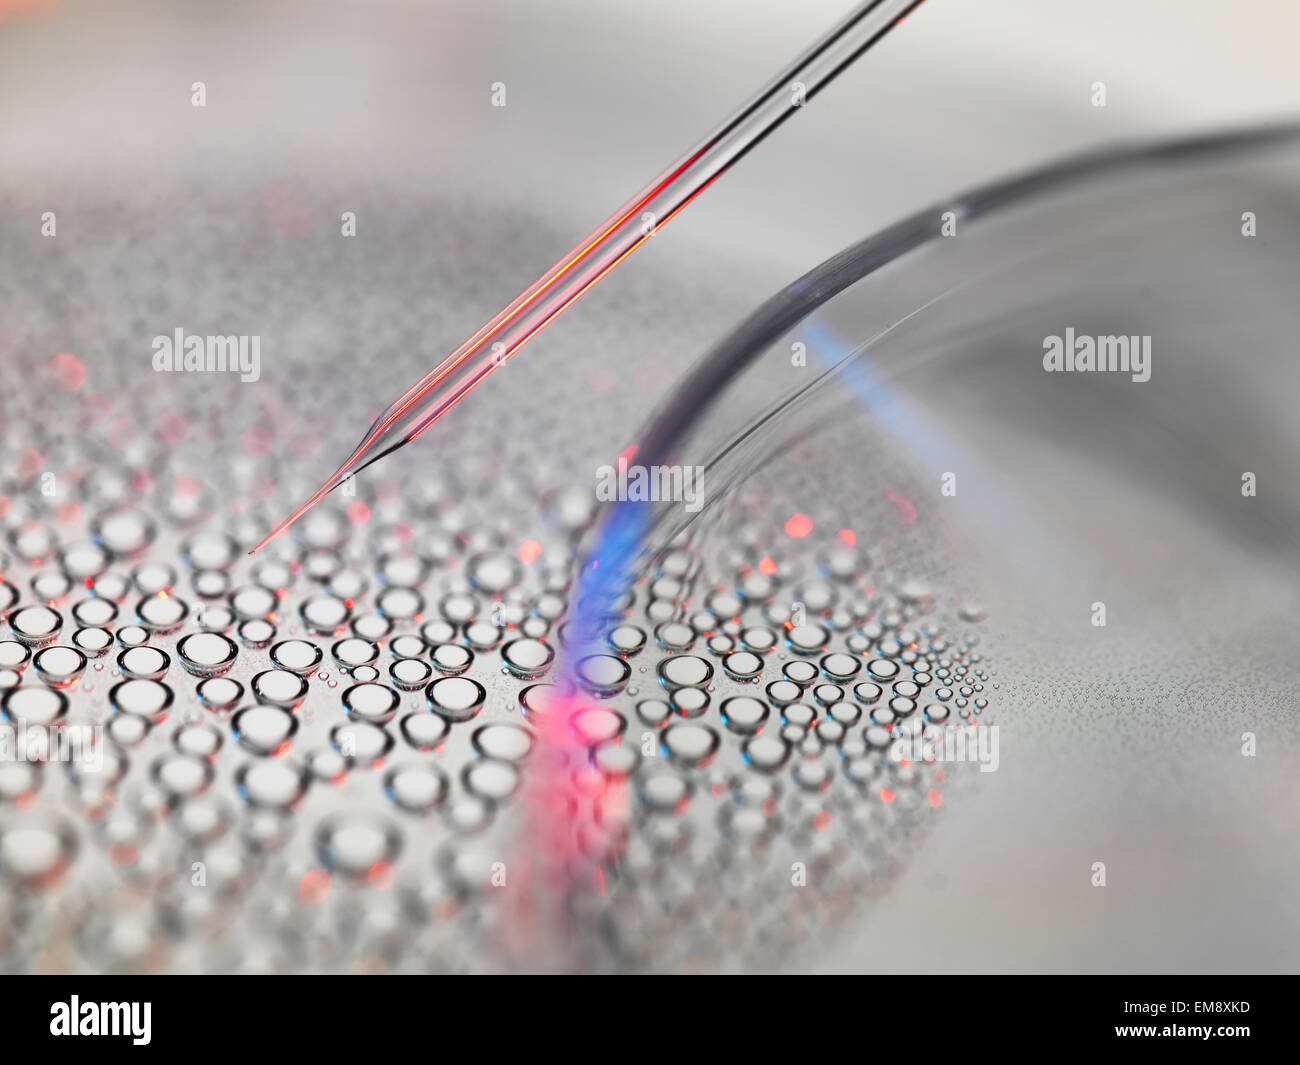 Stammzellforschung, Kerntransfer embryonaler Stammzellen aus Petrischale verwendet beim Klonen für medizinische Forschung Stockfoto